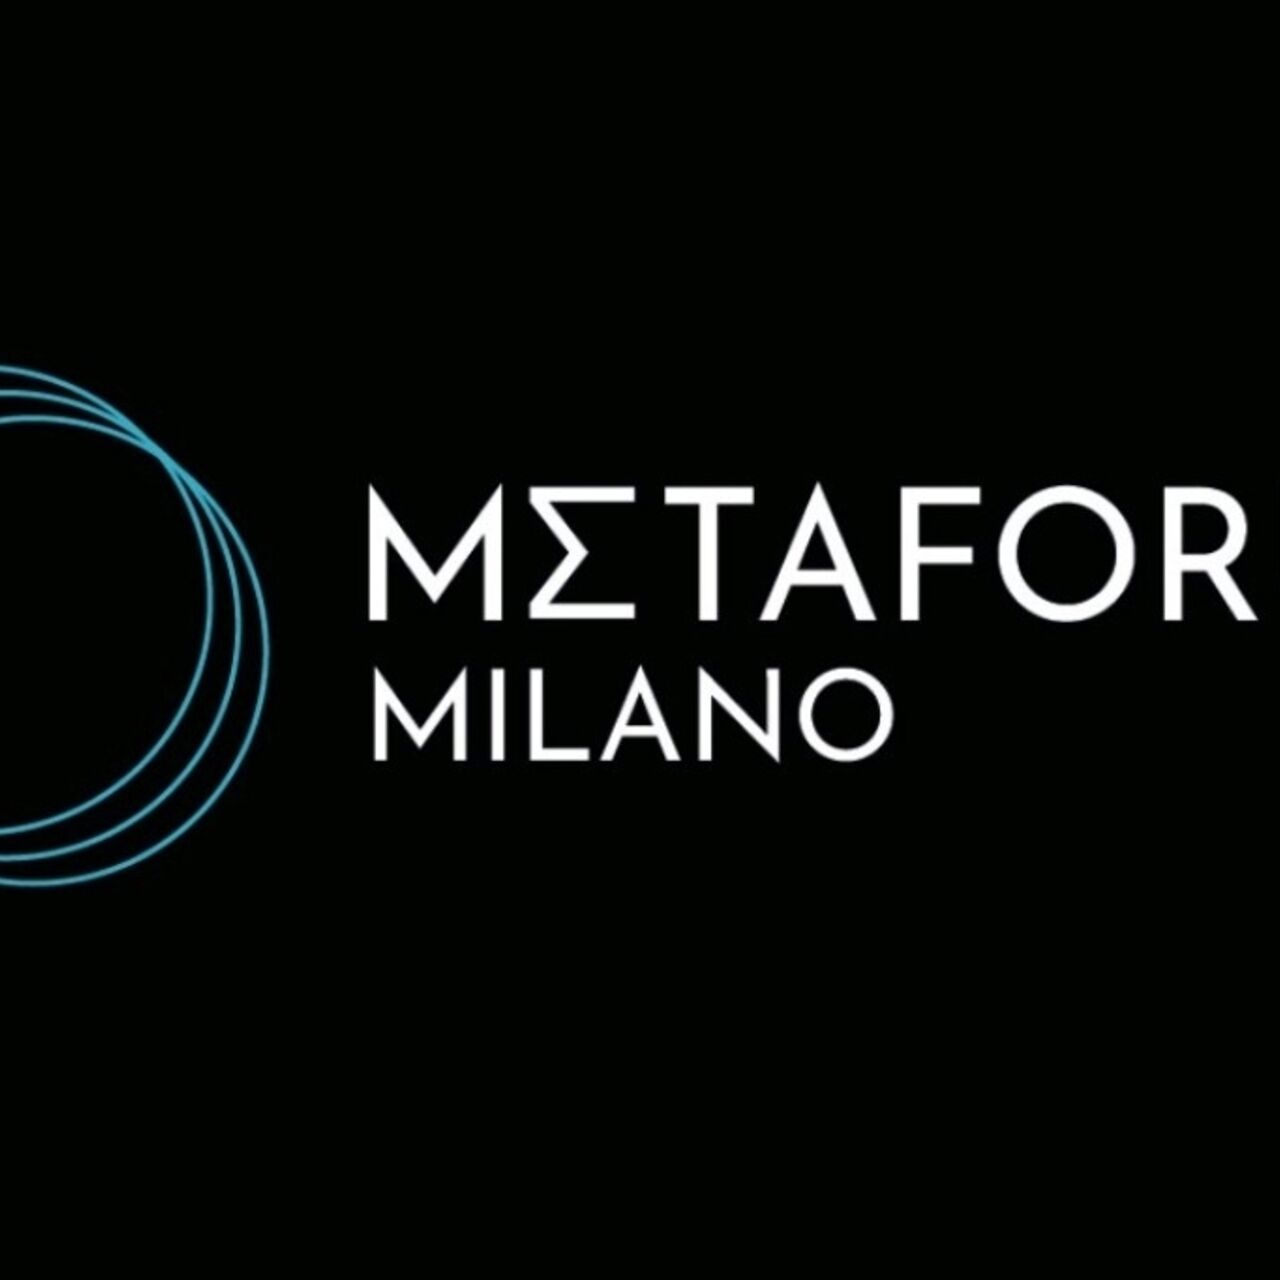 Metaforum: il logotipo del Metaforum Milano